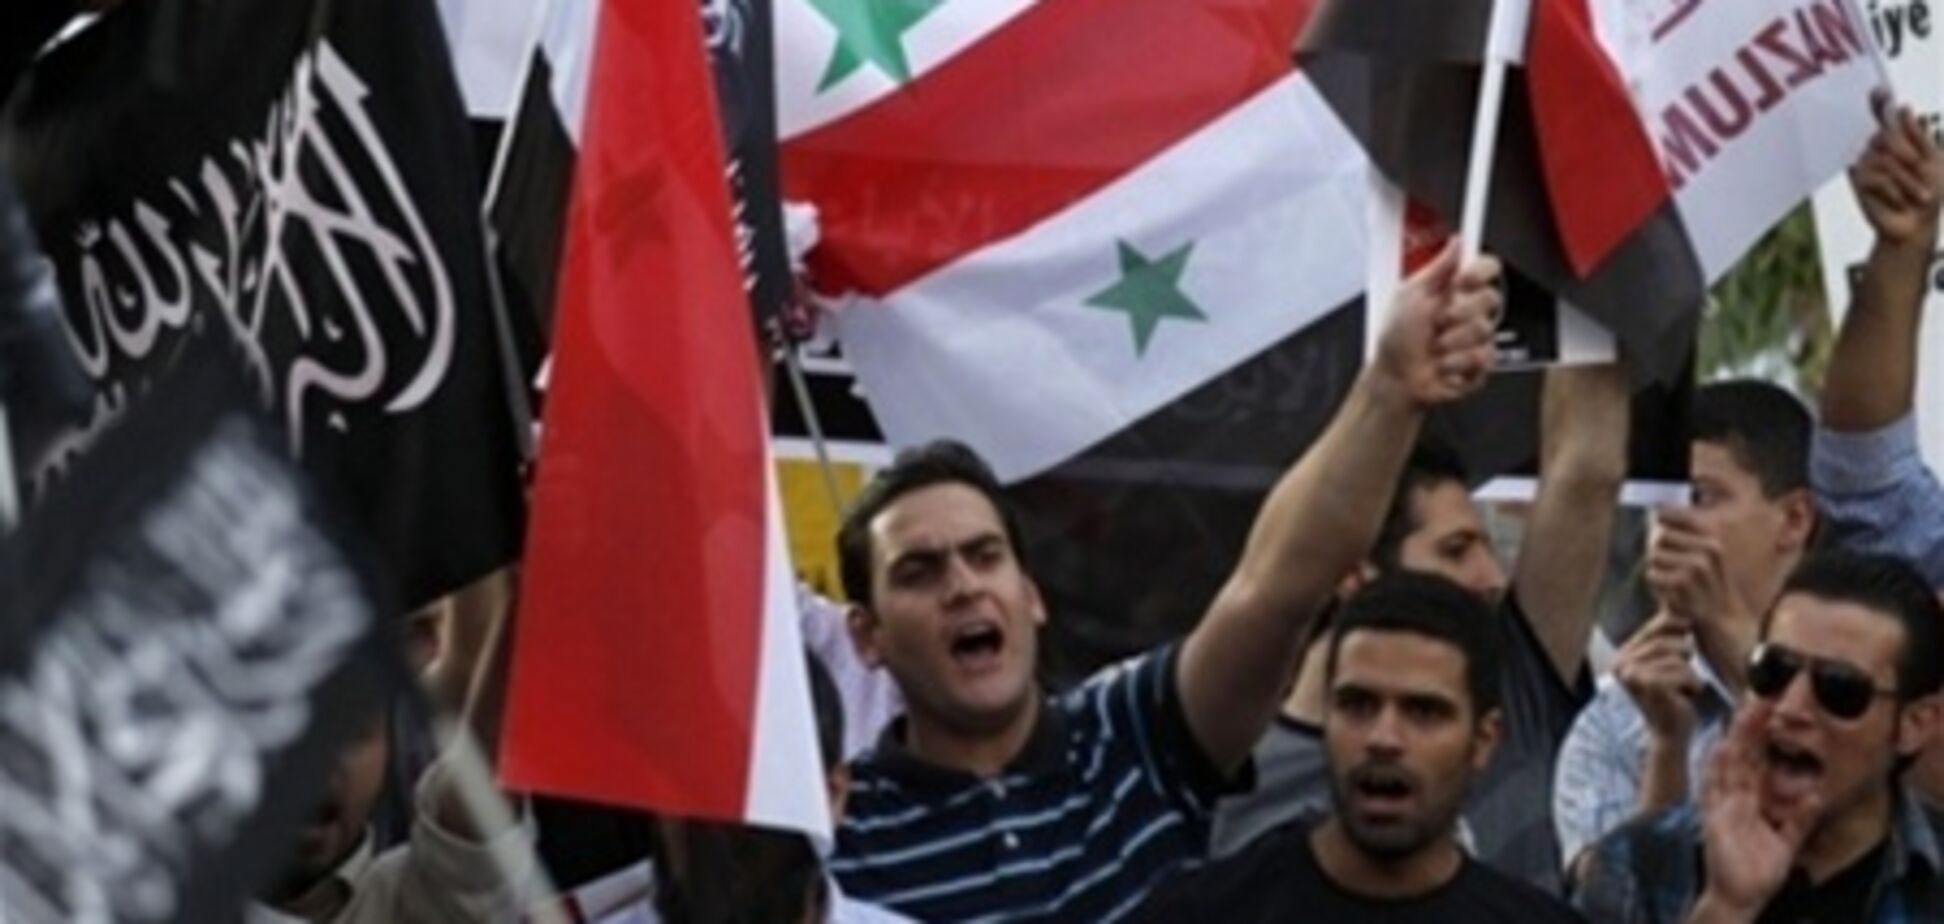 Єгипет передасть своє посольство в Дамаску сирійської опозиції